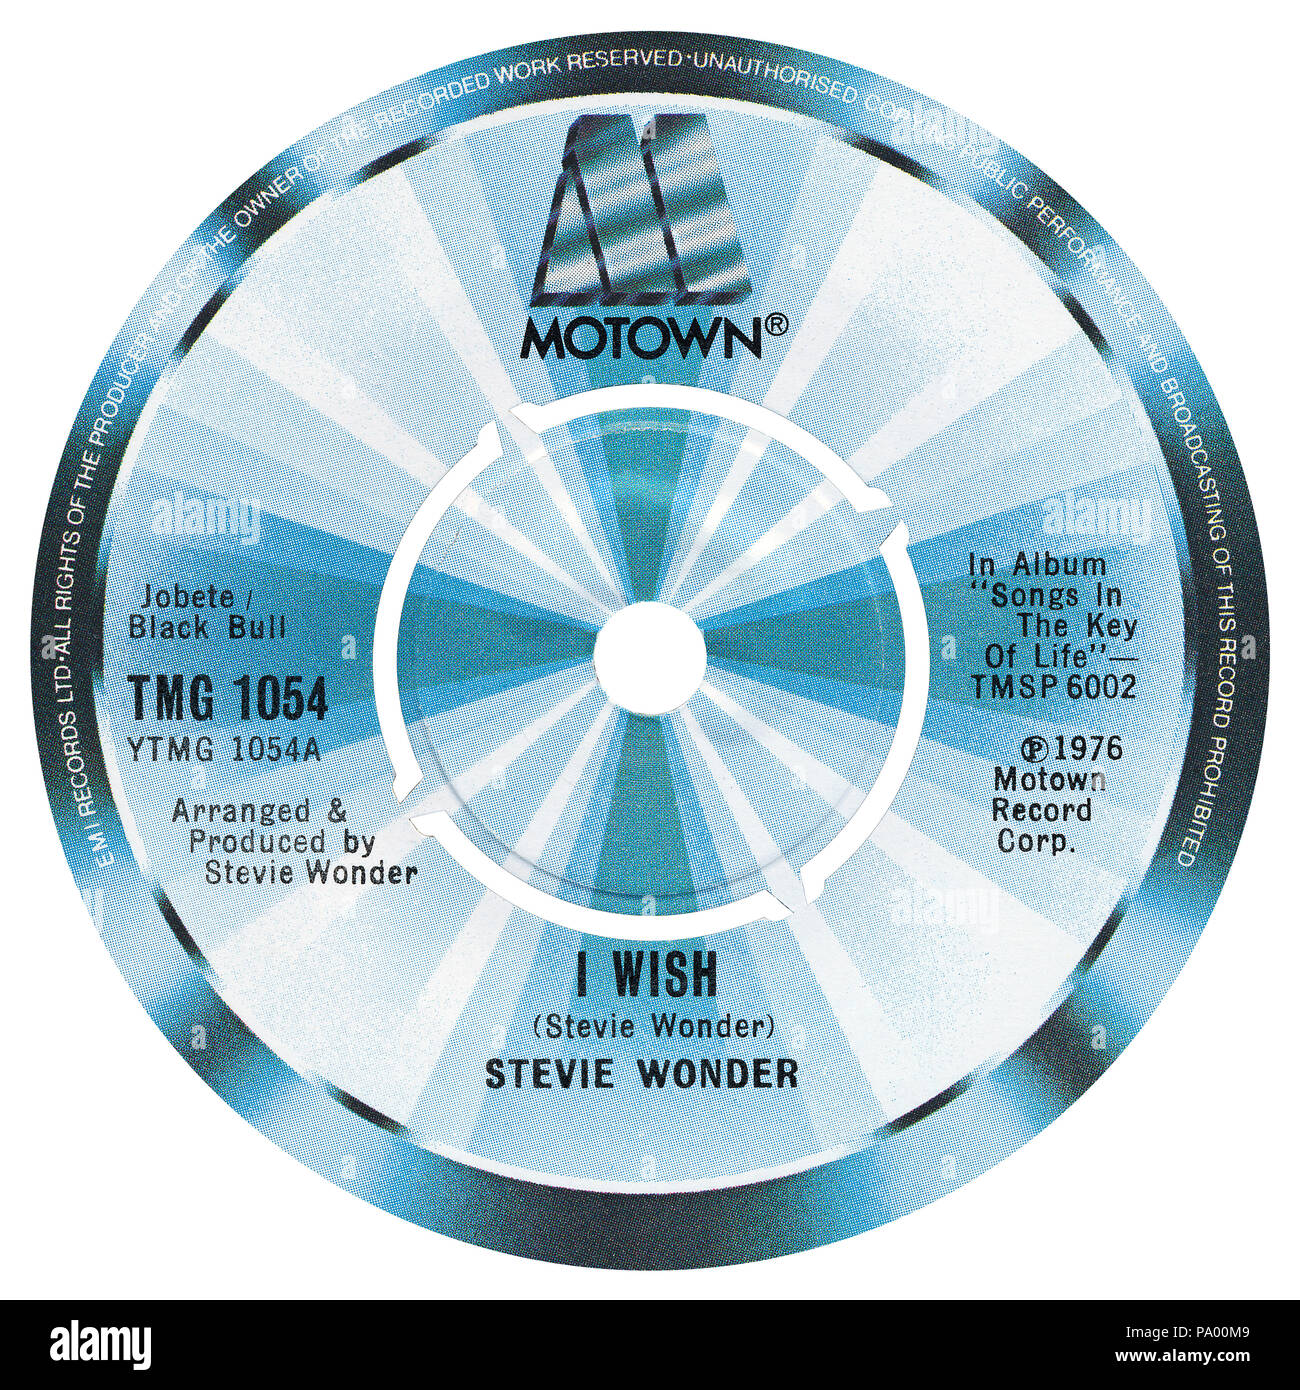 UK 45 U/min 7" Single von Ich möchte von Stevie Wonder in der Motown Label aus dem Jahr 1976. Geschrieben, arrangiert und produziert von Stevie Wonder. Stockfoto